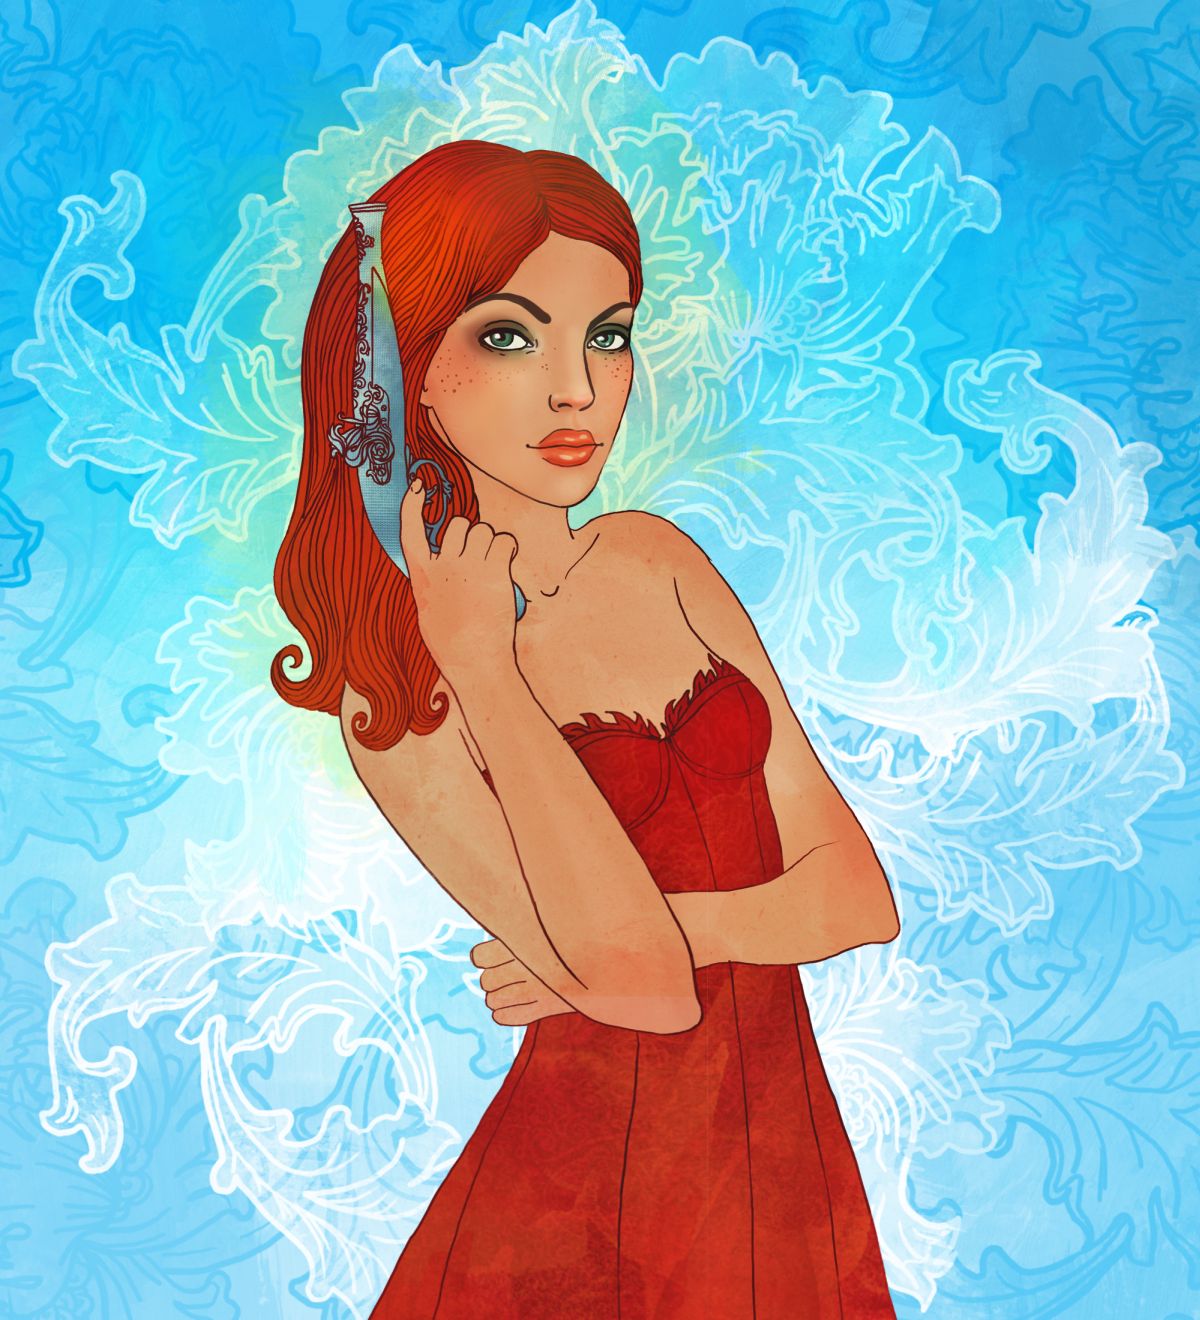 O femeie frumoasă, cu părul și rochia de culoare roșie, ilustrează zodia Săgetător.